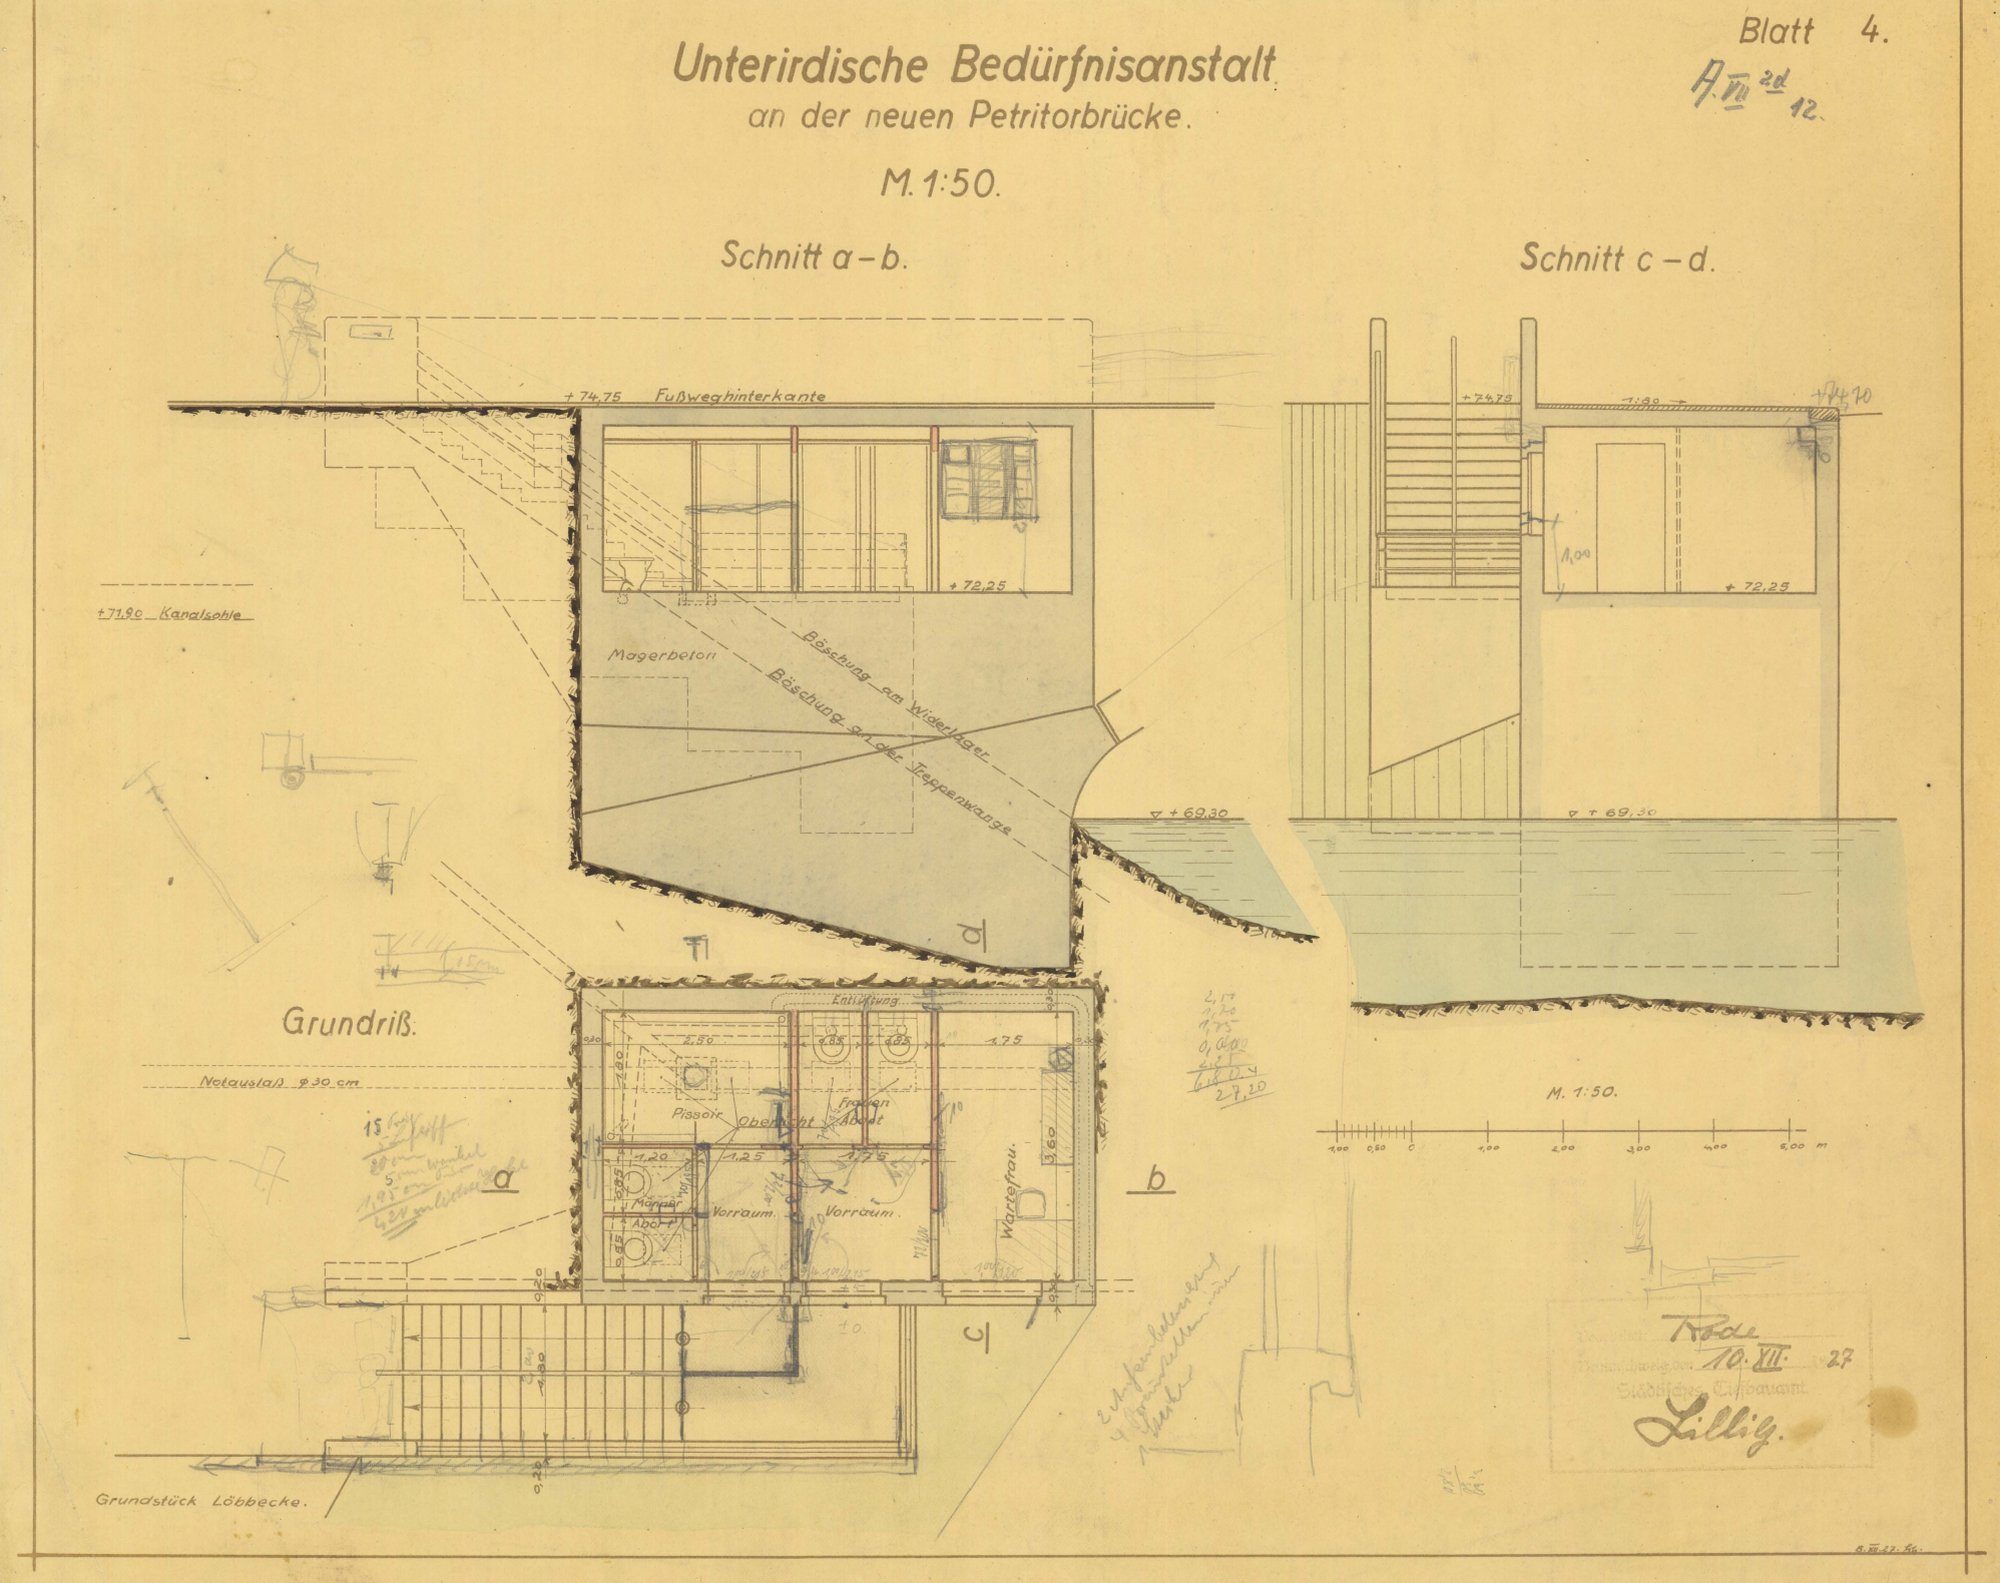 Petritorbrücke, Entwurf für integrierte Bedürfnisanstalt, 1927 (Wird bei Klick vergrößert)